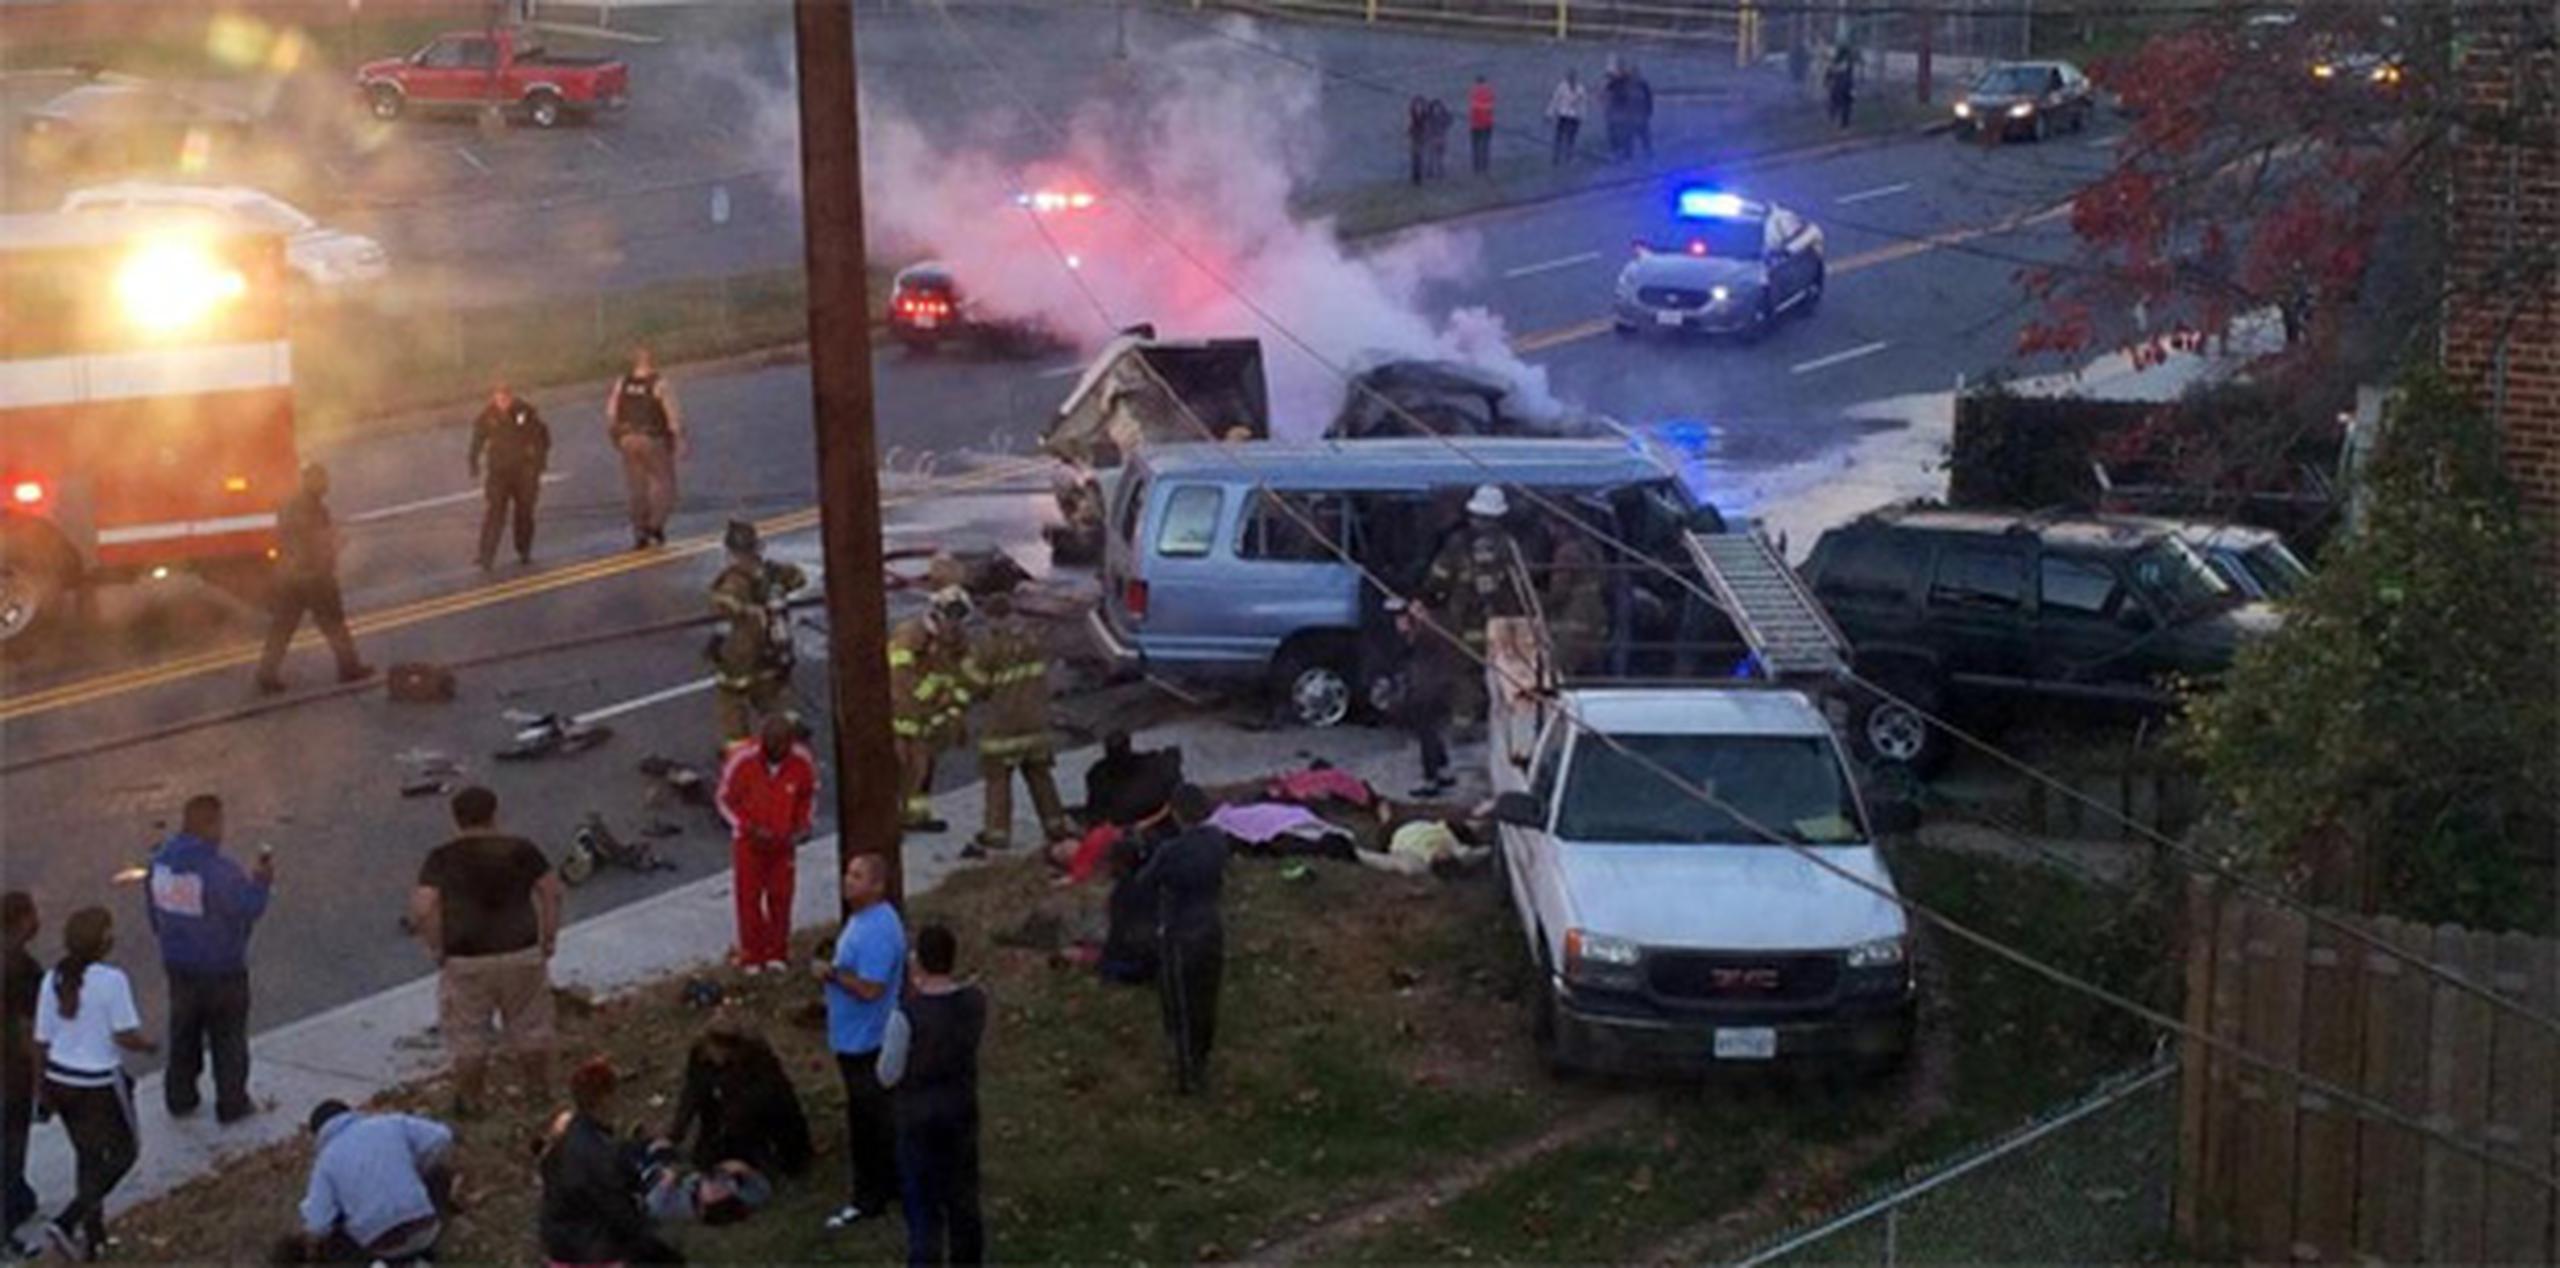 El accidente ocurrió a las cinco de la tarde en un calle en la localidad de Hyattsville, en Maryland, al noreste de Washington, D.C. (AP)